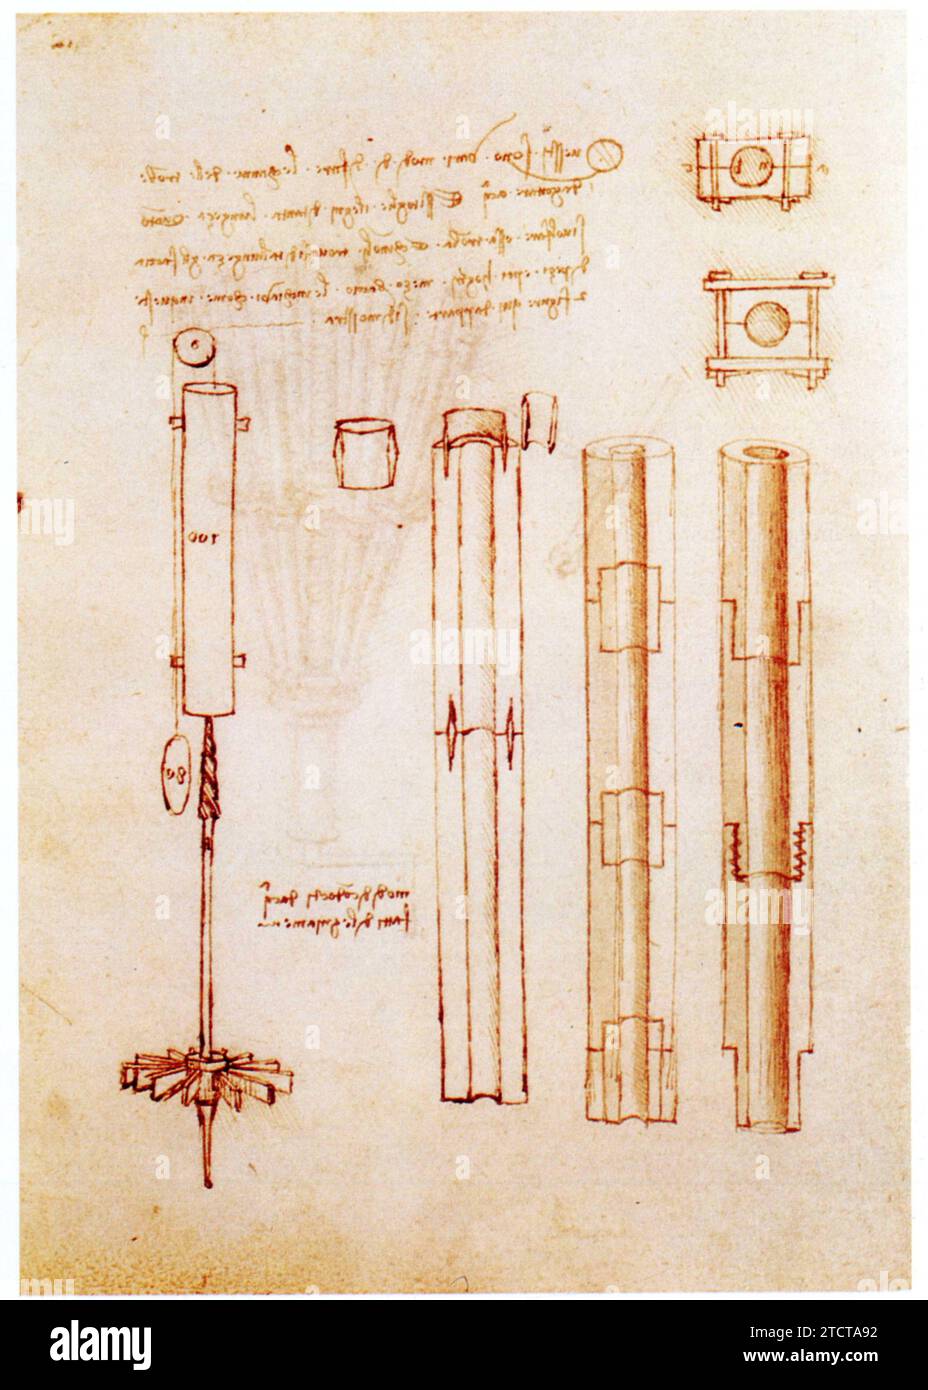 Leonardo da Vinci.1452-1519.tuyaux de bois modulaires pour conduites d'eau. Foto Stock